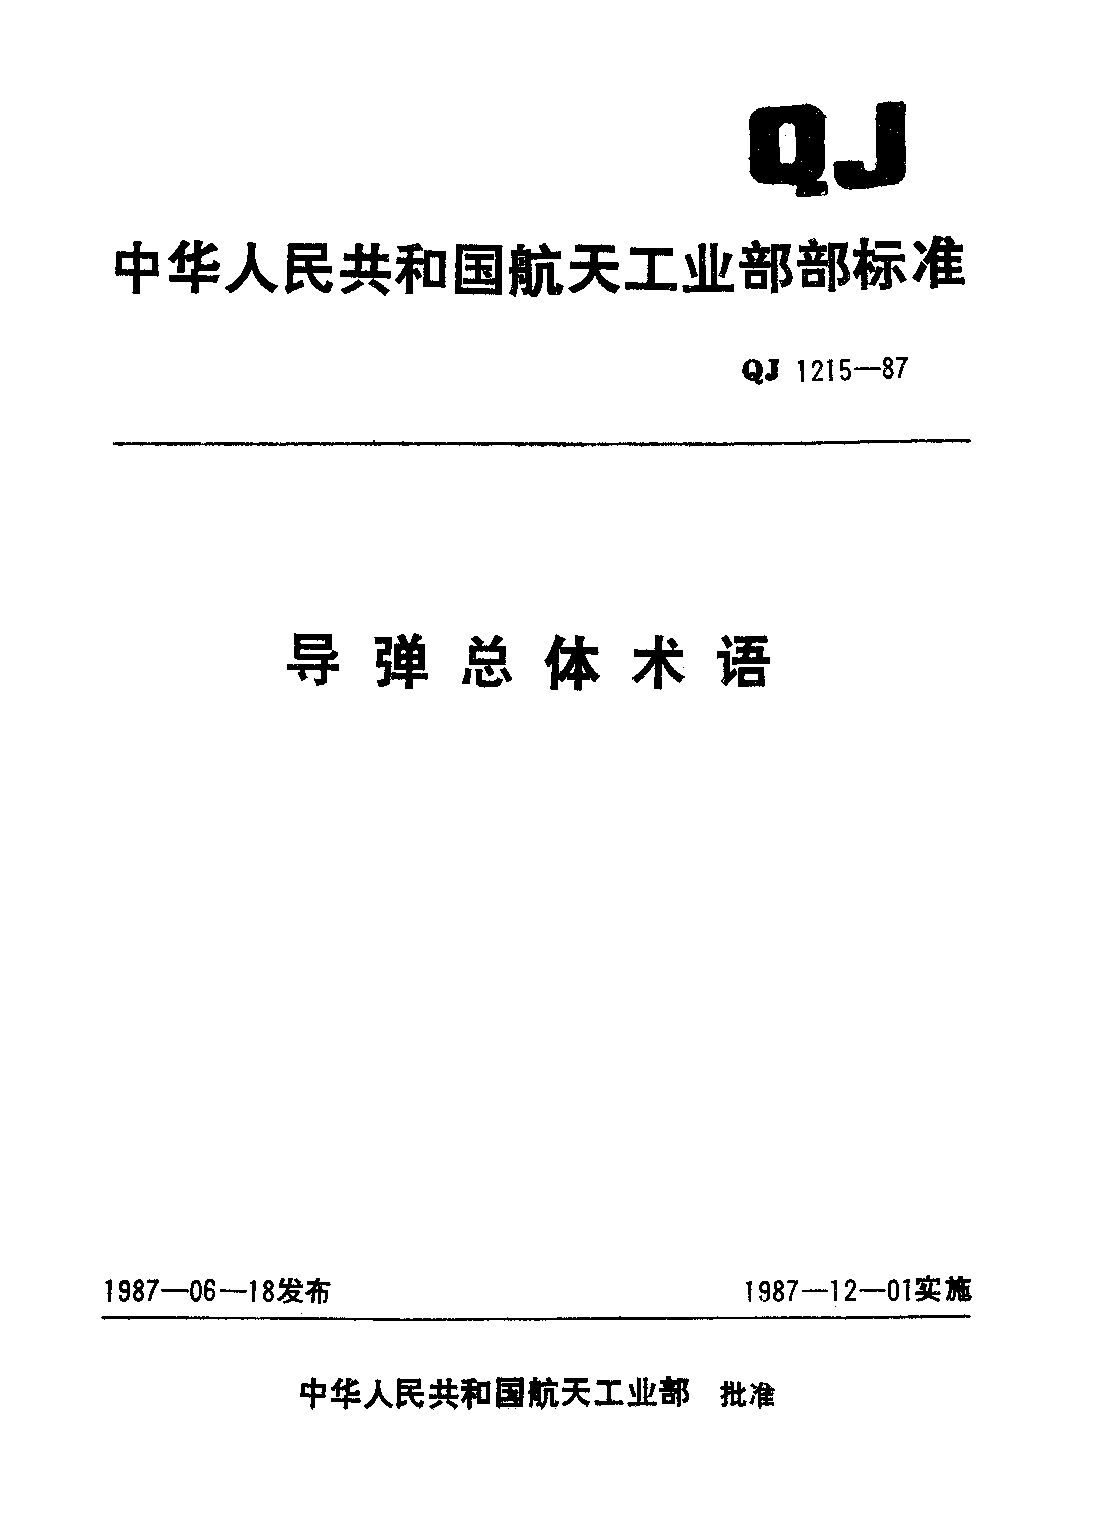 QJ 1215-1987封面图